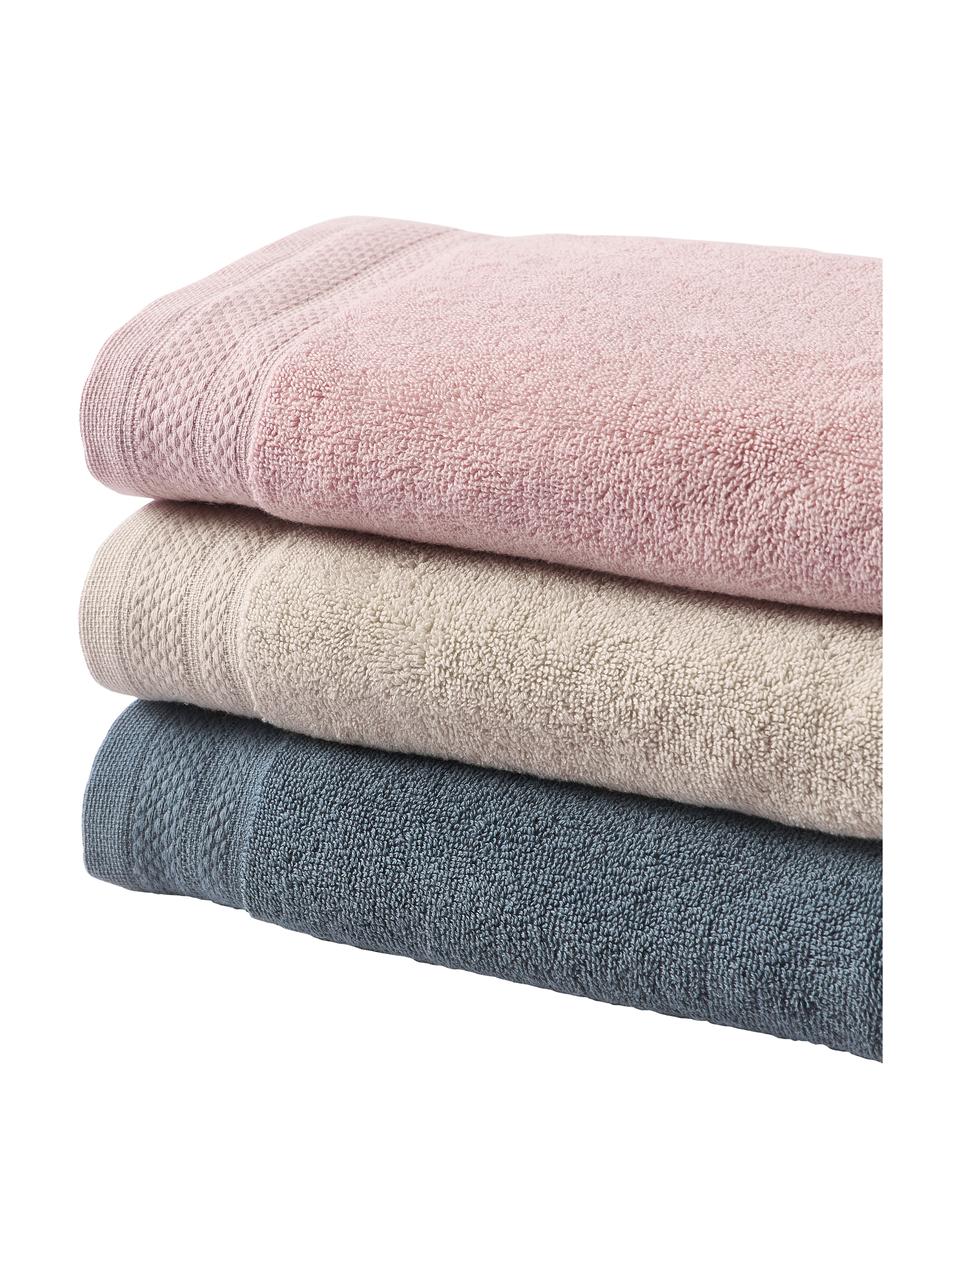 Set 3 asciugamani in cotone organico Premium, 100% cotone organico certificato GOTS (da GCL International, GCL-300517).
Qualità pesante, 600 g/m², Blu scuro, Set in varie misure